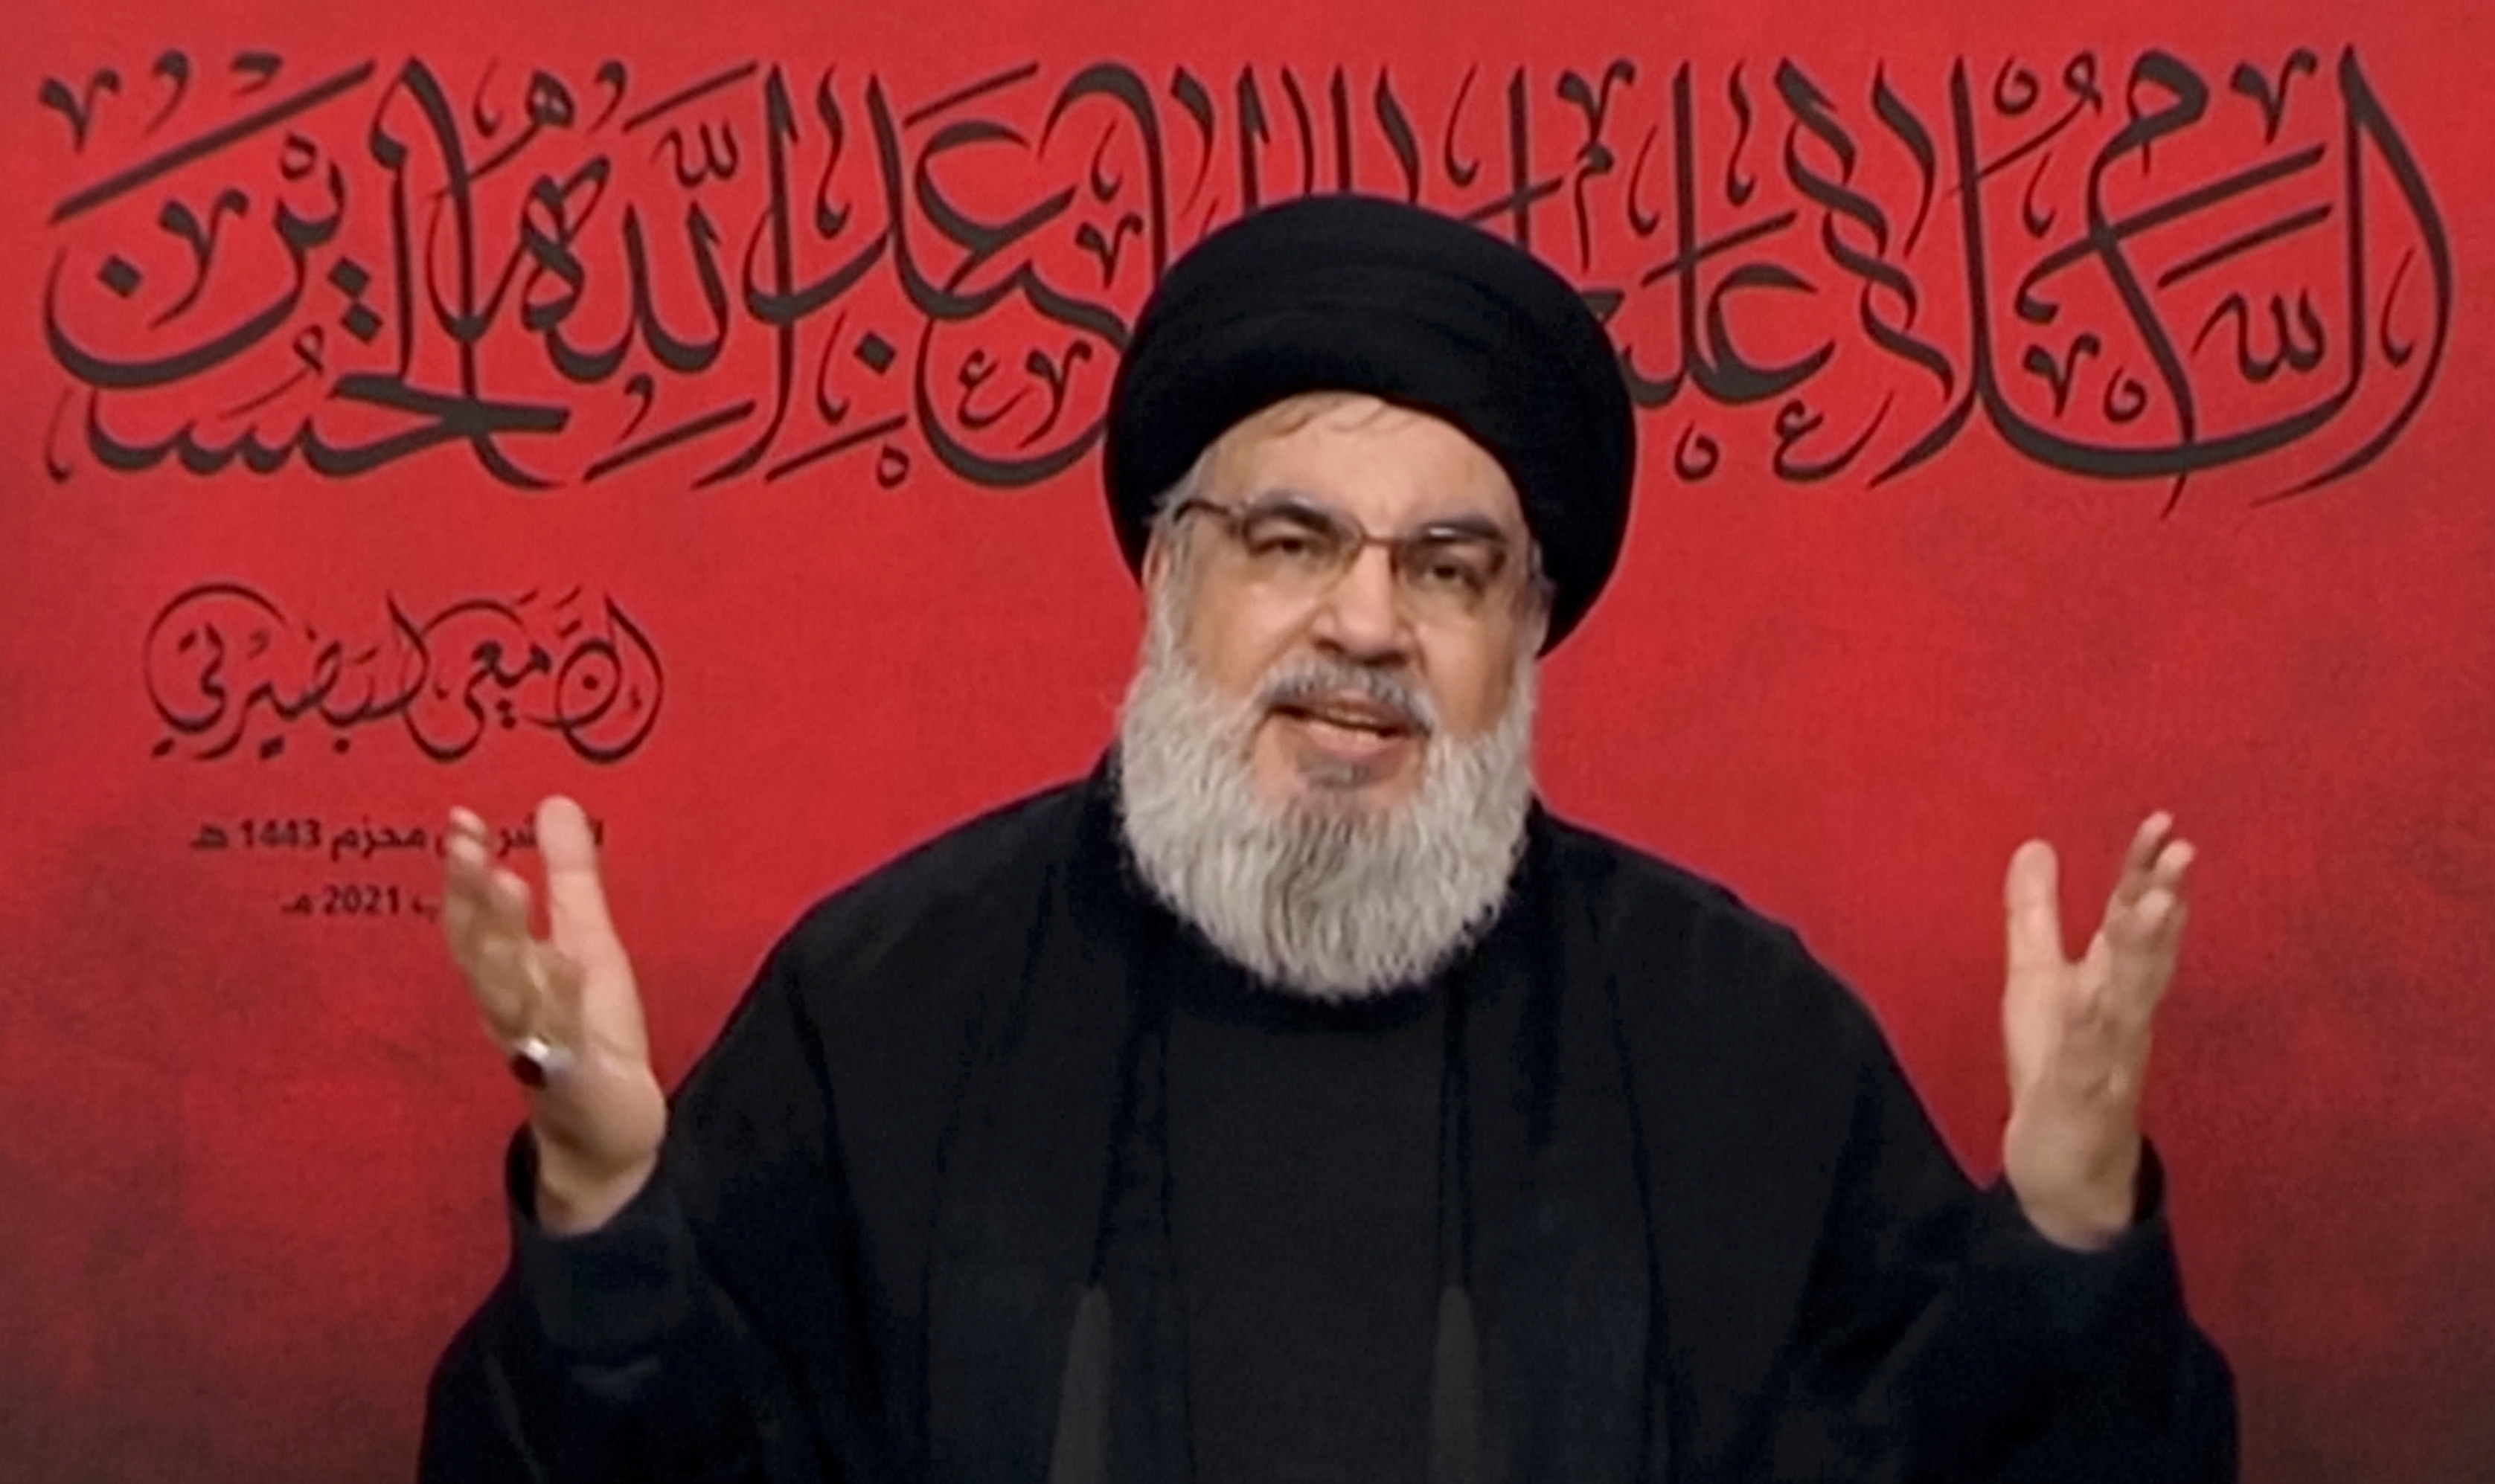 El jefe del grupo terrorista Hezbollah confirmó que su bloque perdió la mayoría en el parlamento libanés